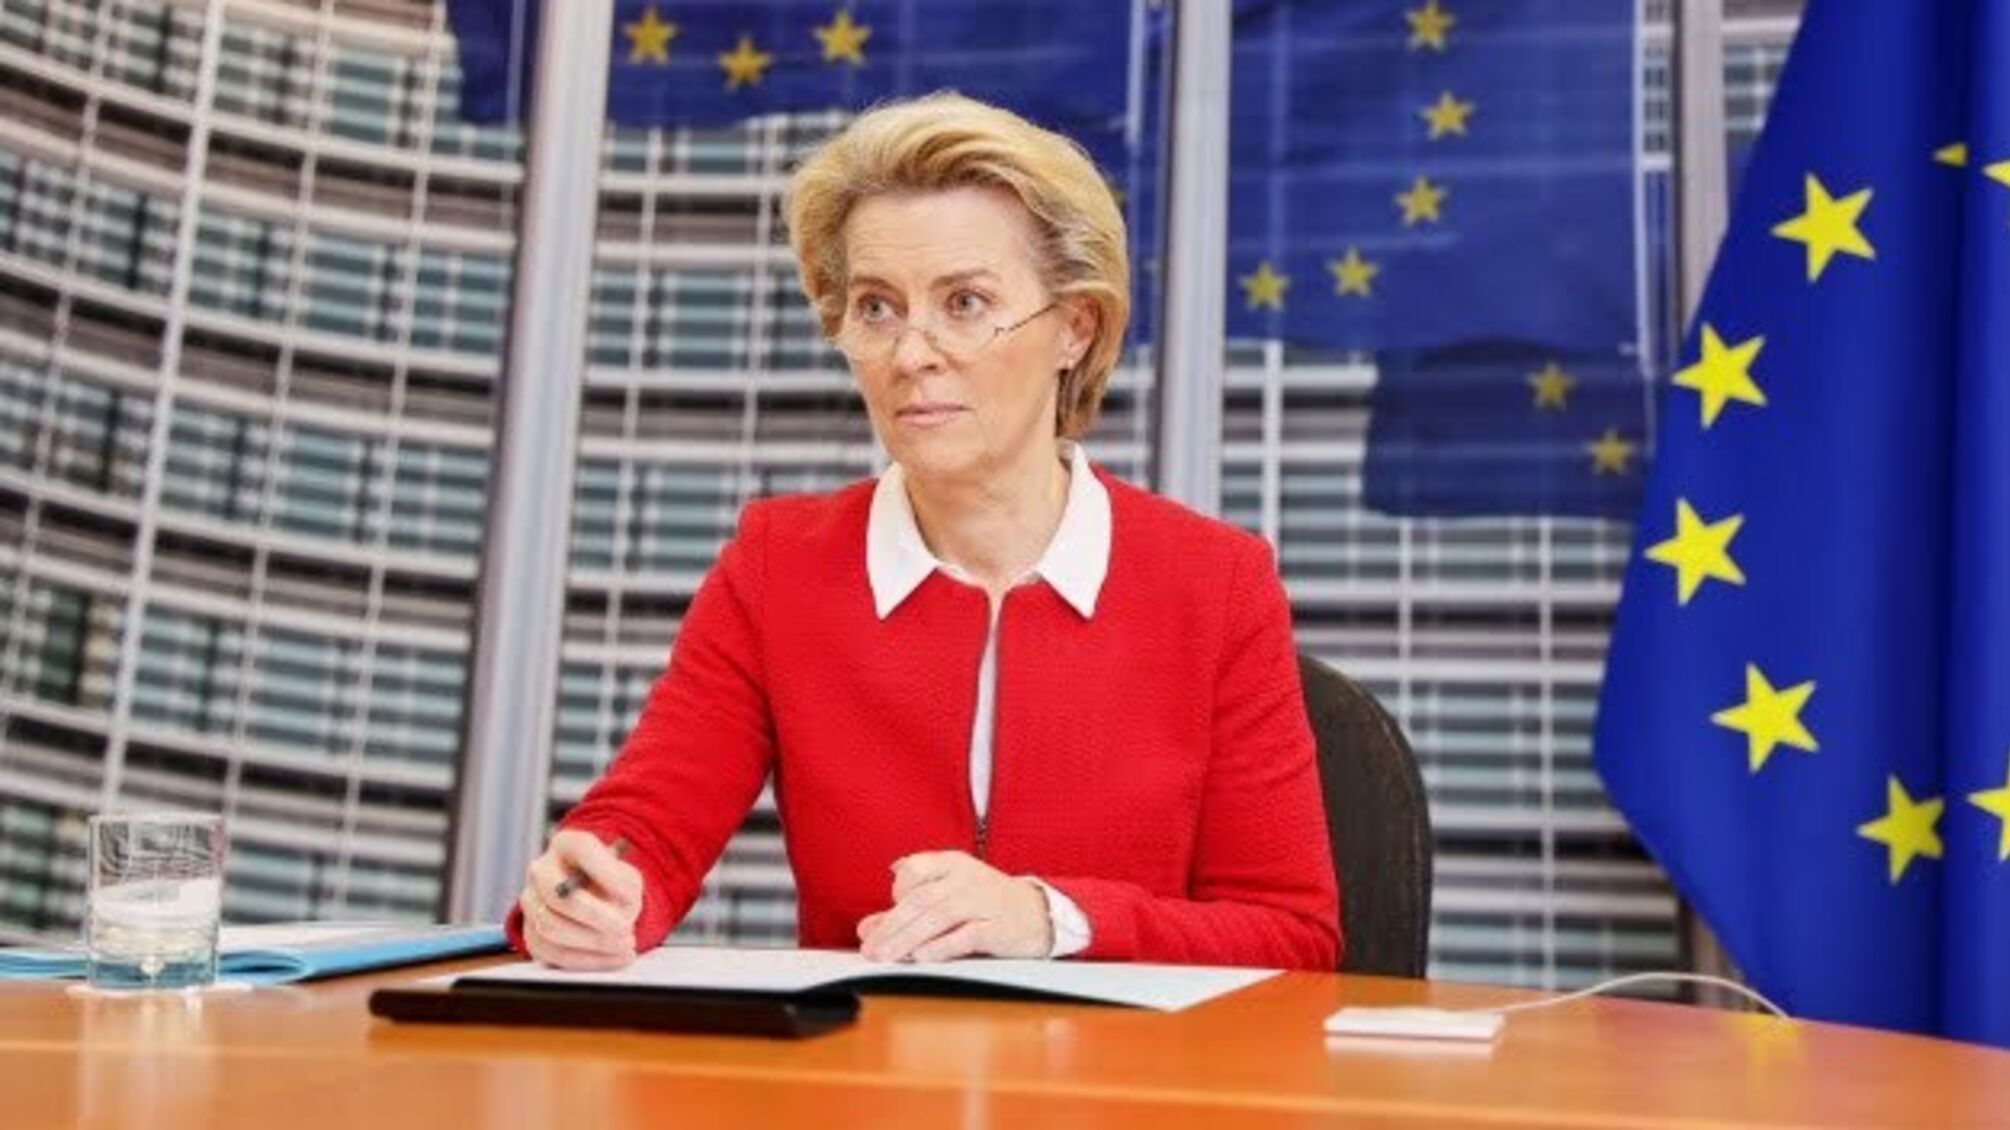 Шенгенська зона перебуває під тиском та потребує зміцнення – президент Єврокомісії